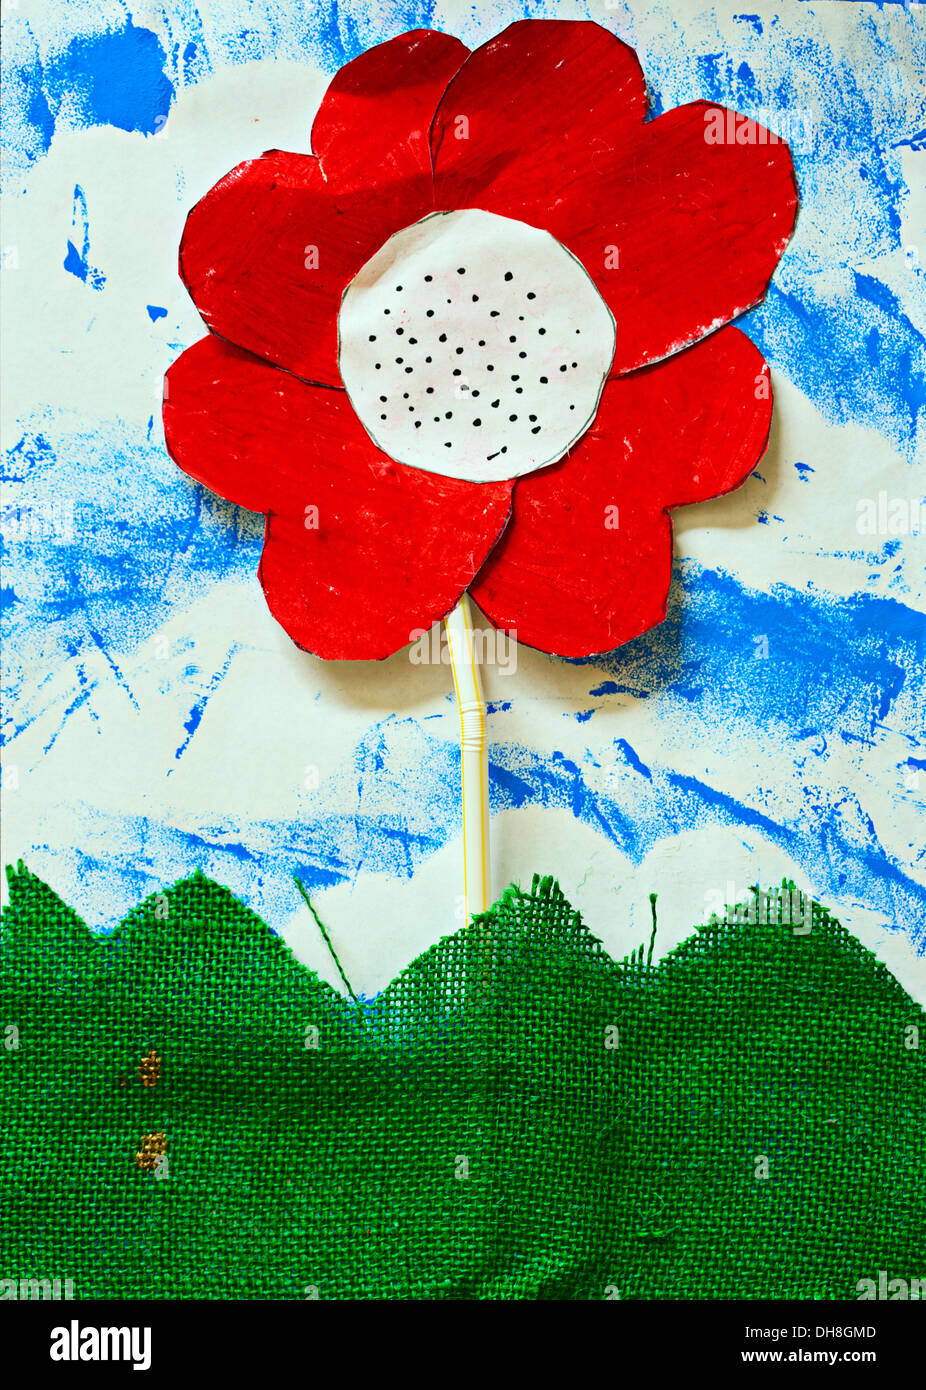 Ilustraciones infantiles: flor de papel, paja y tela Foto de stock